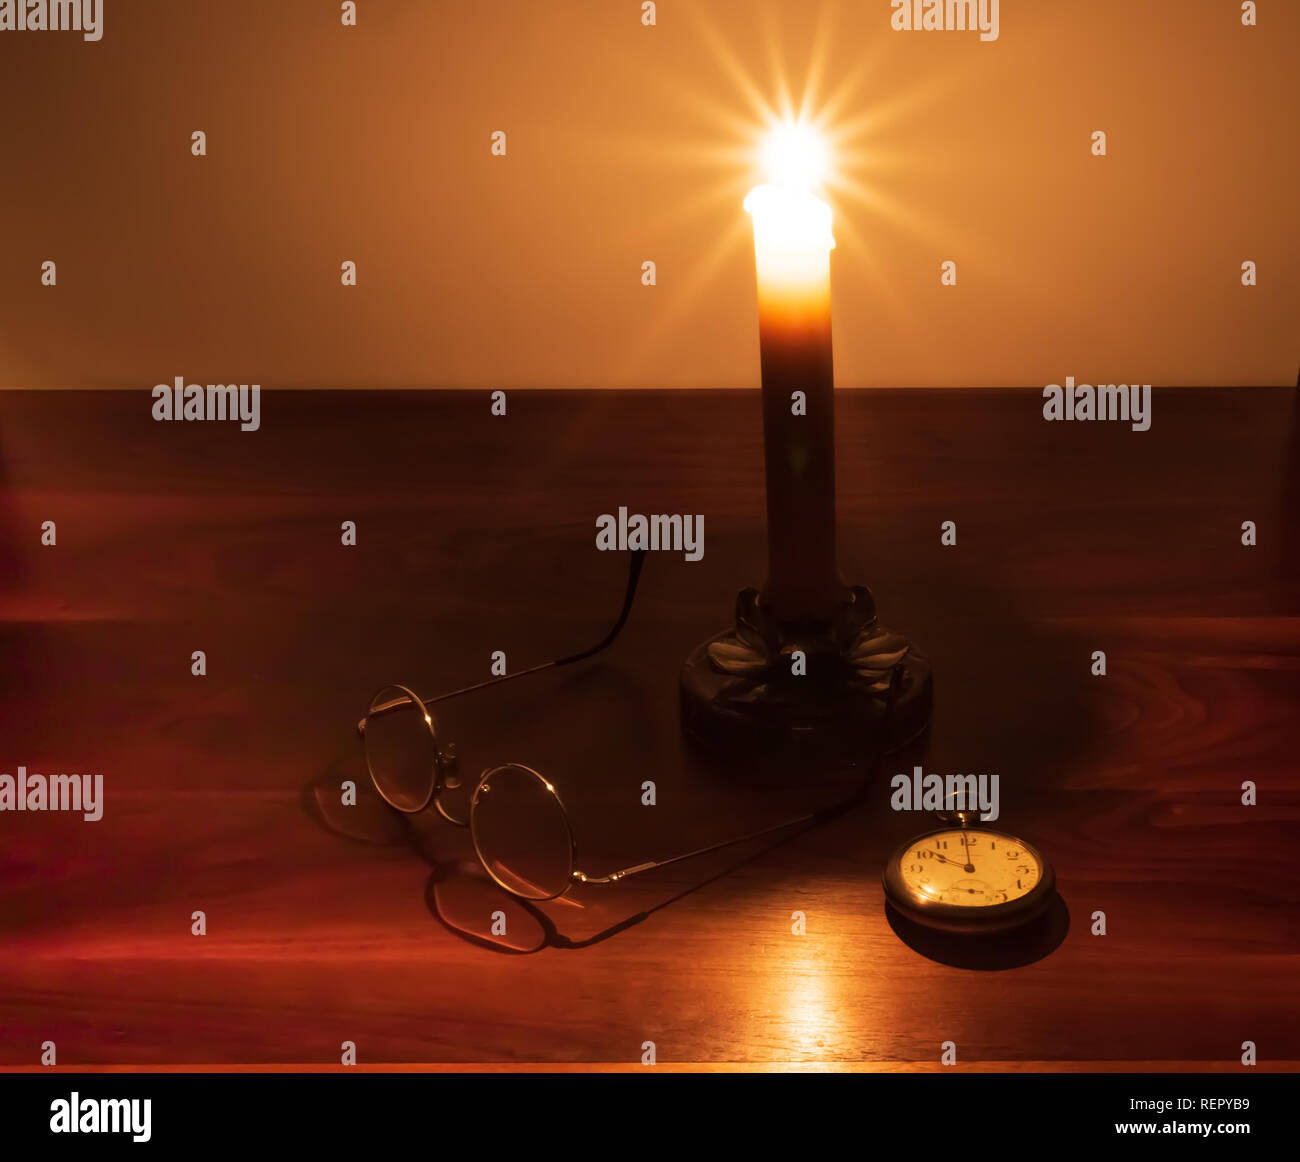 Ein reichhaltiges, Nussbaum dunkel Desktop mit einer brennenden Kerze, alte Taschenuhr, und Draht Hornbrille. Stockfoto